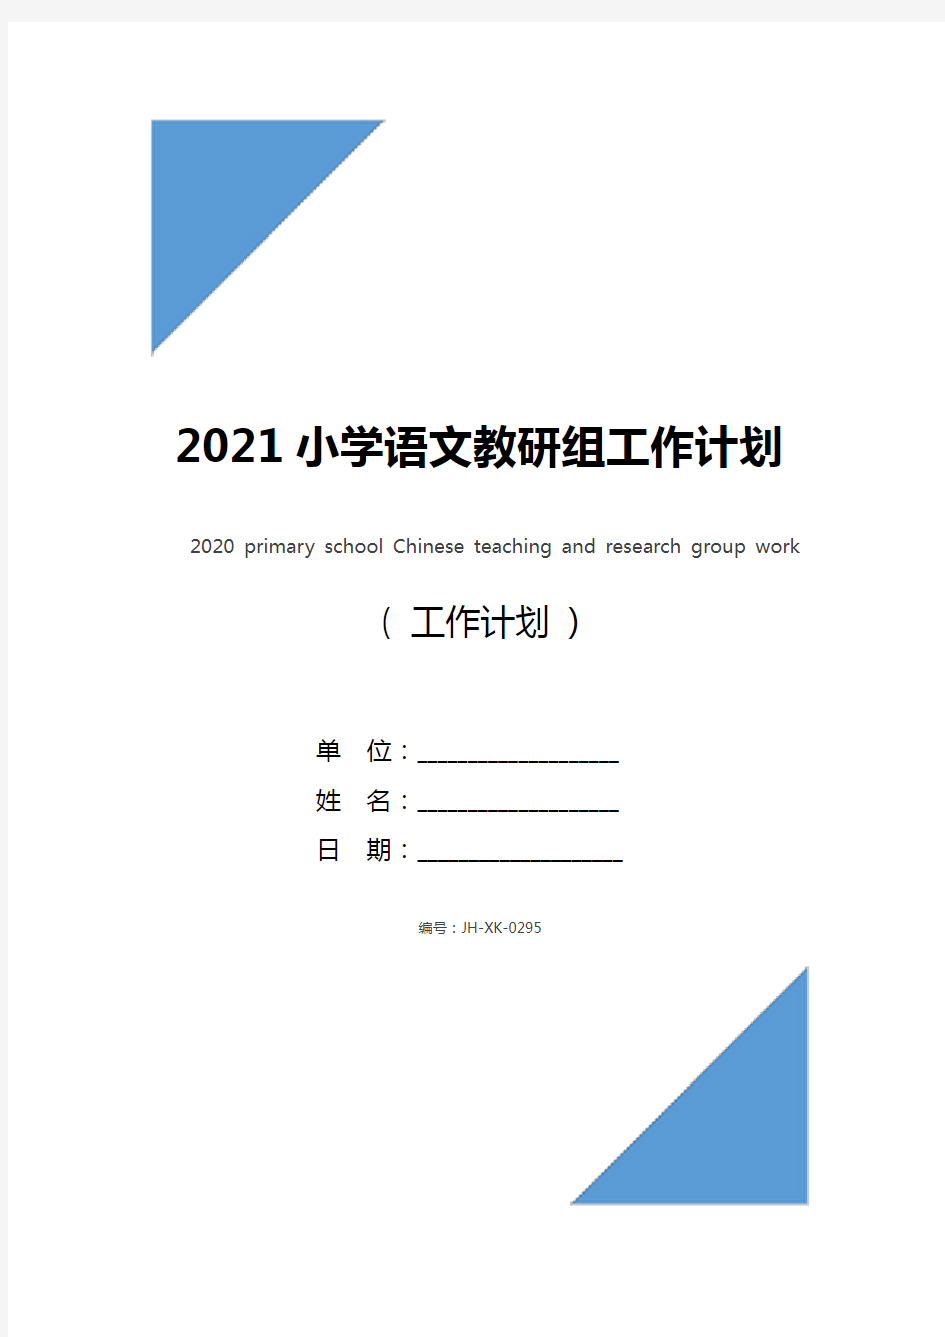 2021小学语文教研组工作计划(新版)